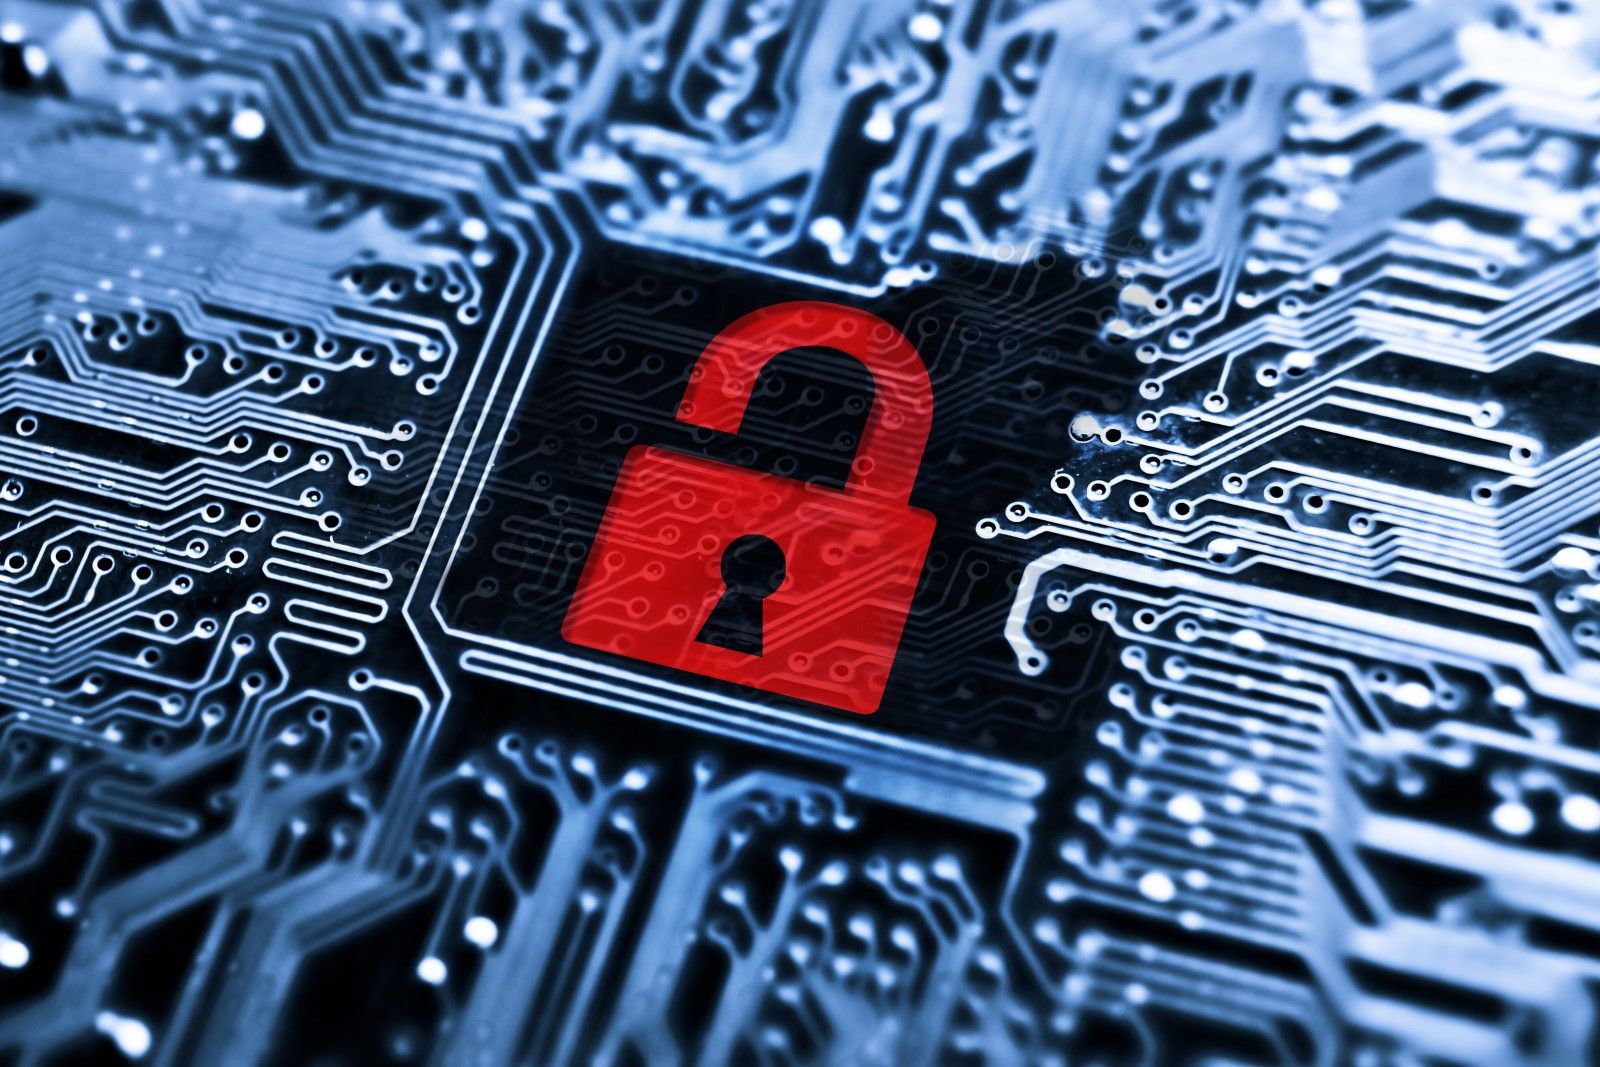 кибербезопасность — необходимый компонент криптовалютной биржи